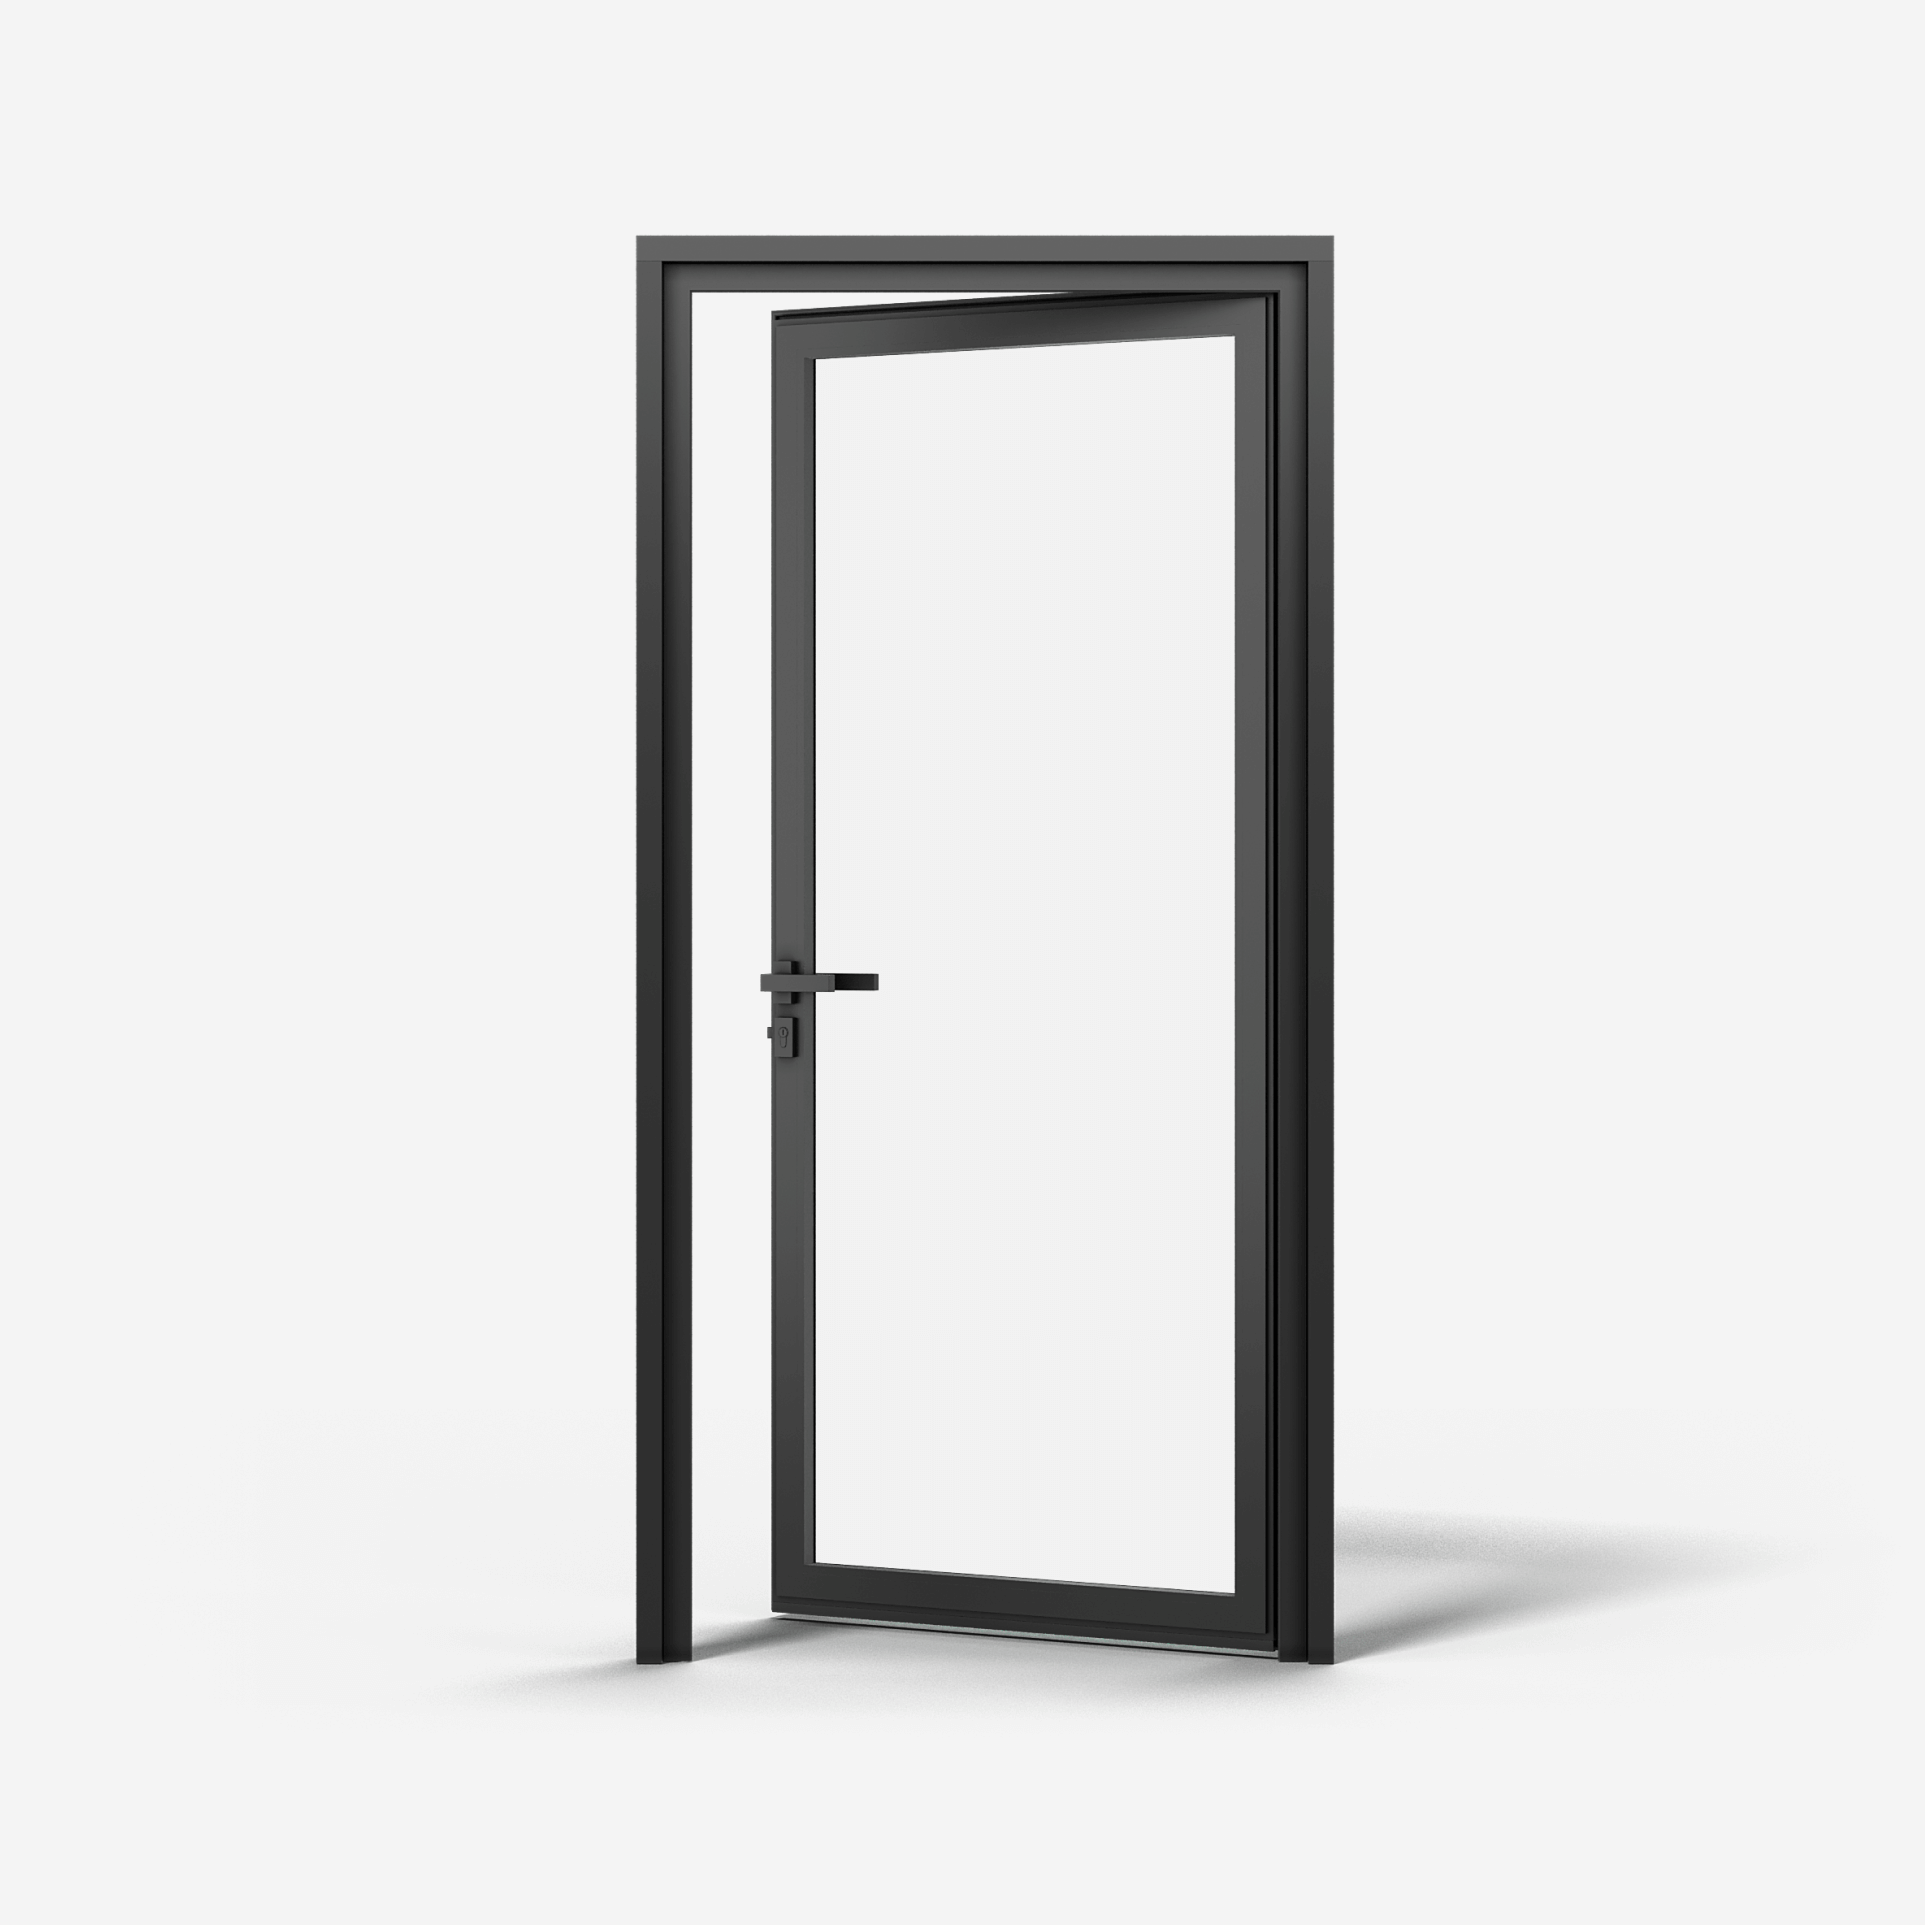 KOMPAS Aluminum Framed Single Swing Door -  RH In